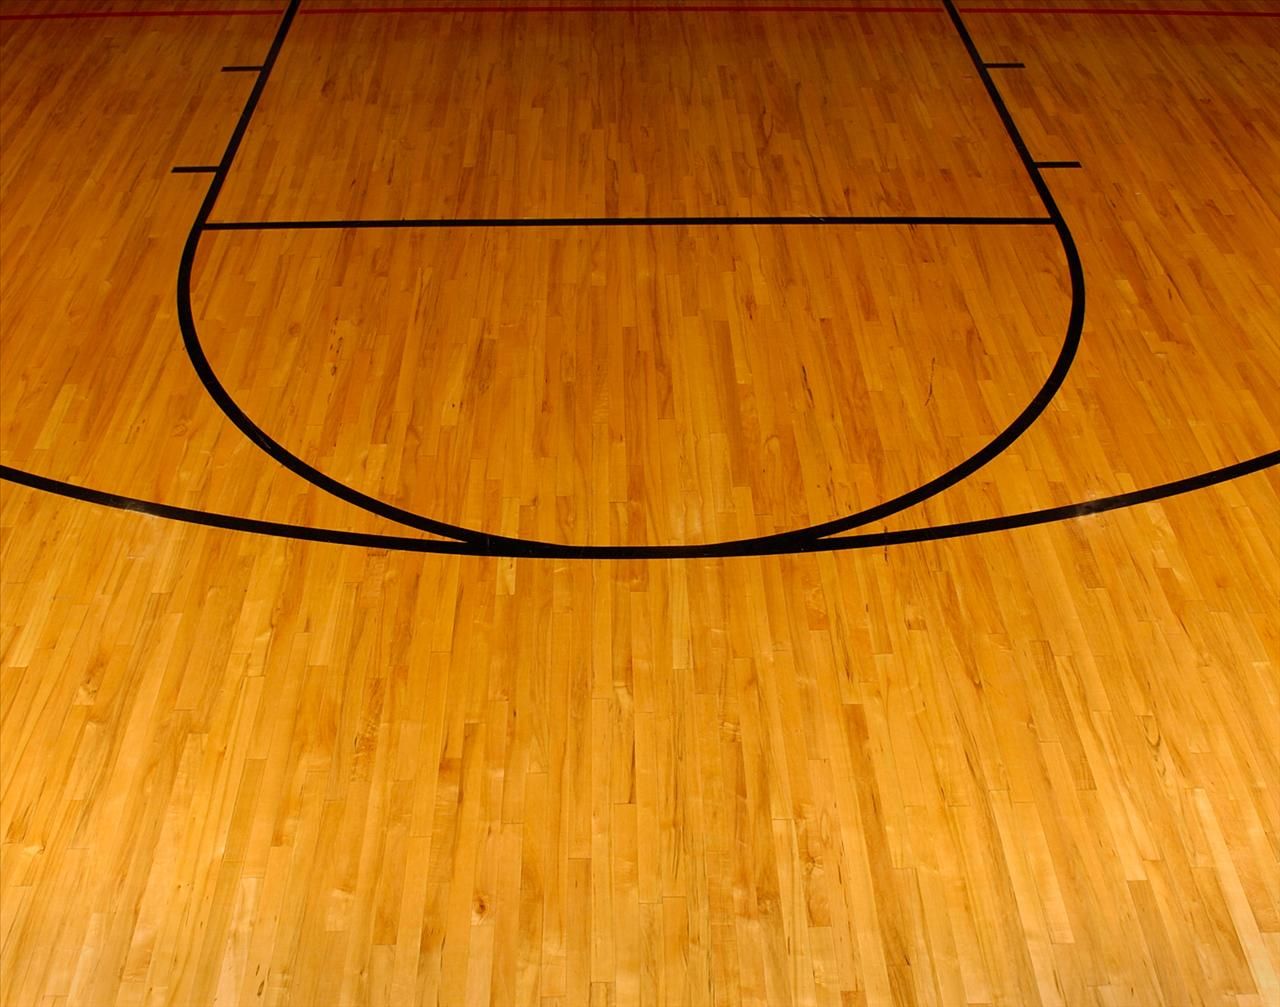 campo da basket wallpaper hd,pavimento,pavimento in legno,legna,legno duro,pavimentazione